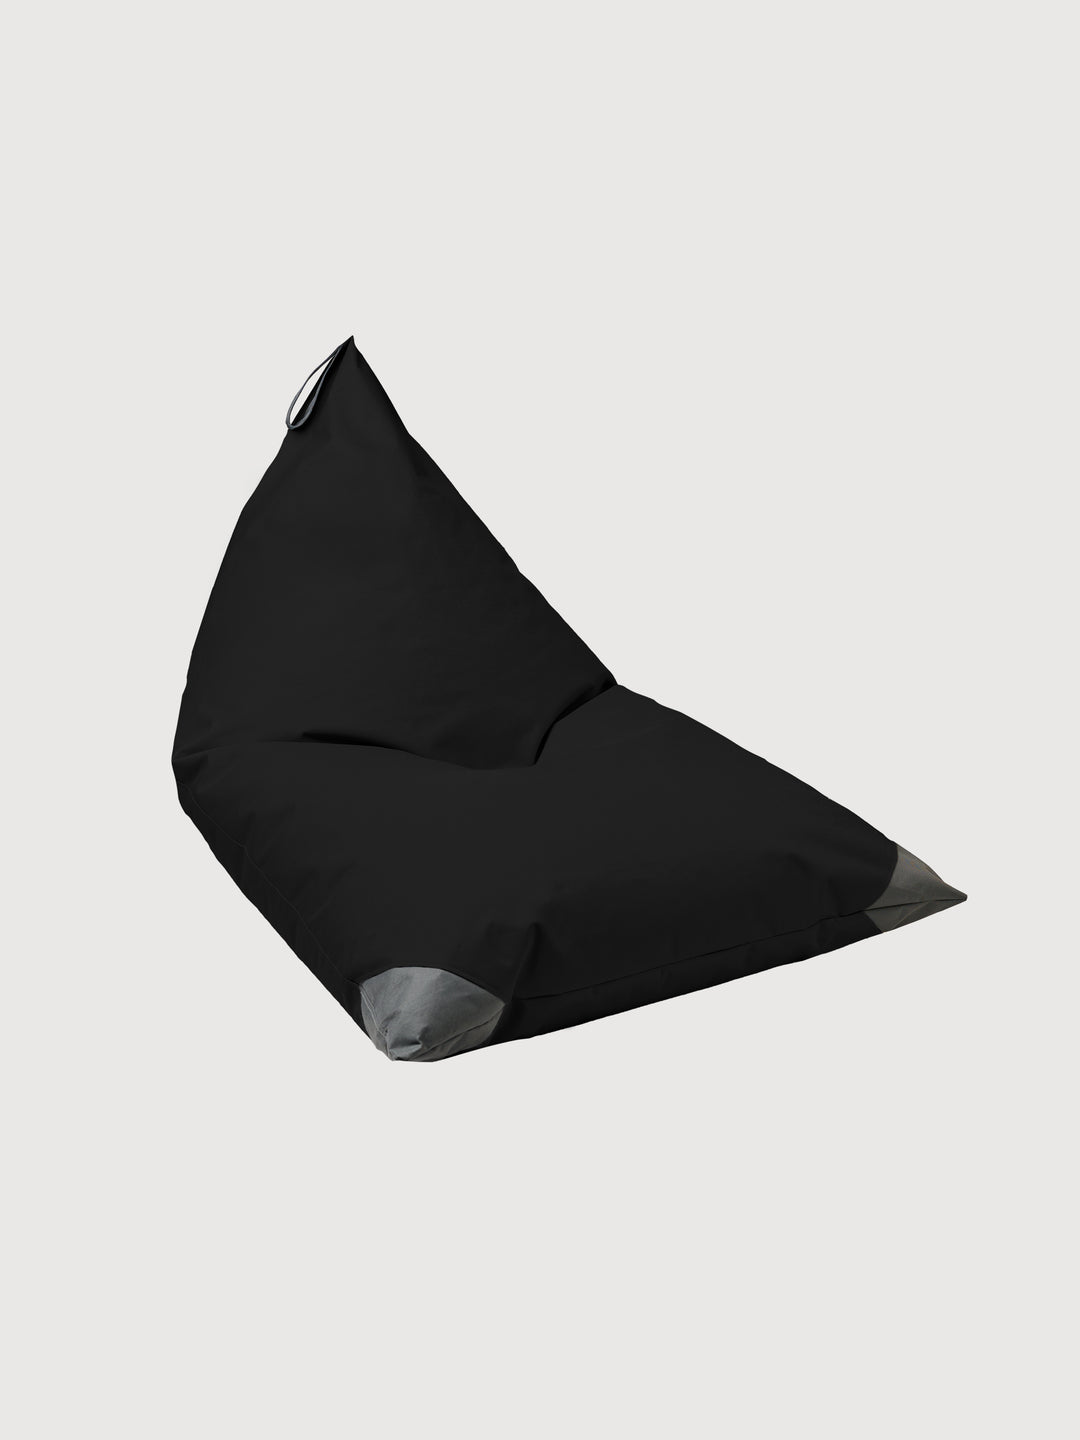 Cojín de Exterior Triangular - Negro / Gris Oscuro